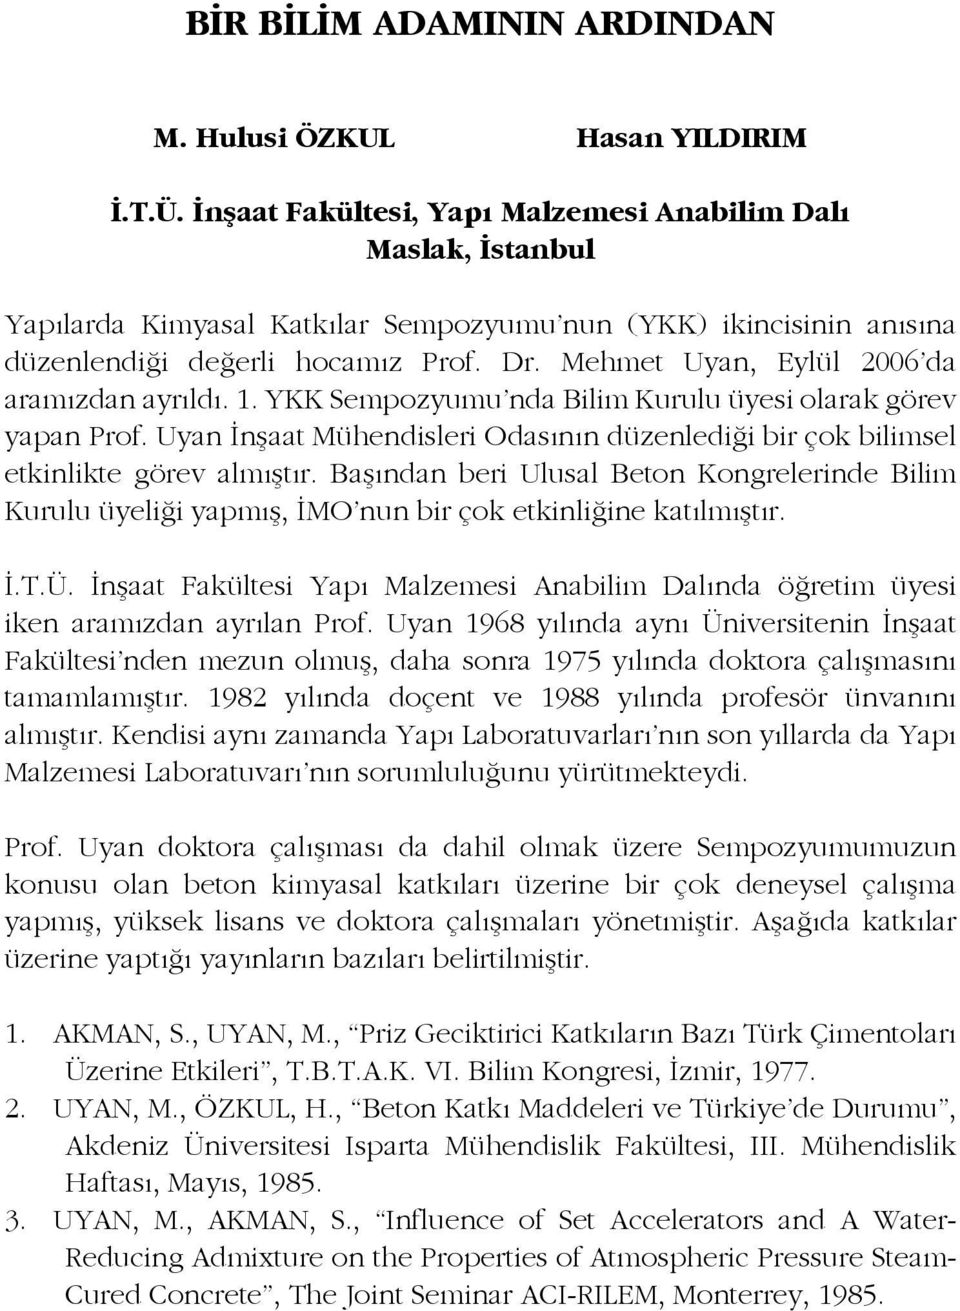 Mehmet Uyan, Eylül 26 da aramızdan ayrıldı. 1. YKK Sempozyumu nda Bilim Kurulu üyesi olarak görev yapan Prof. Uyan İnşaat Mühendisleri Odasının düzenlediği bir çok bilimsel etkinlikte görev almıştır.